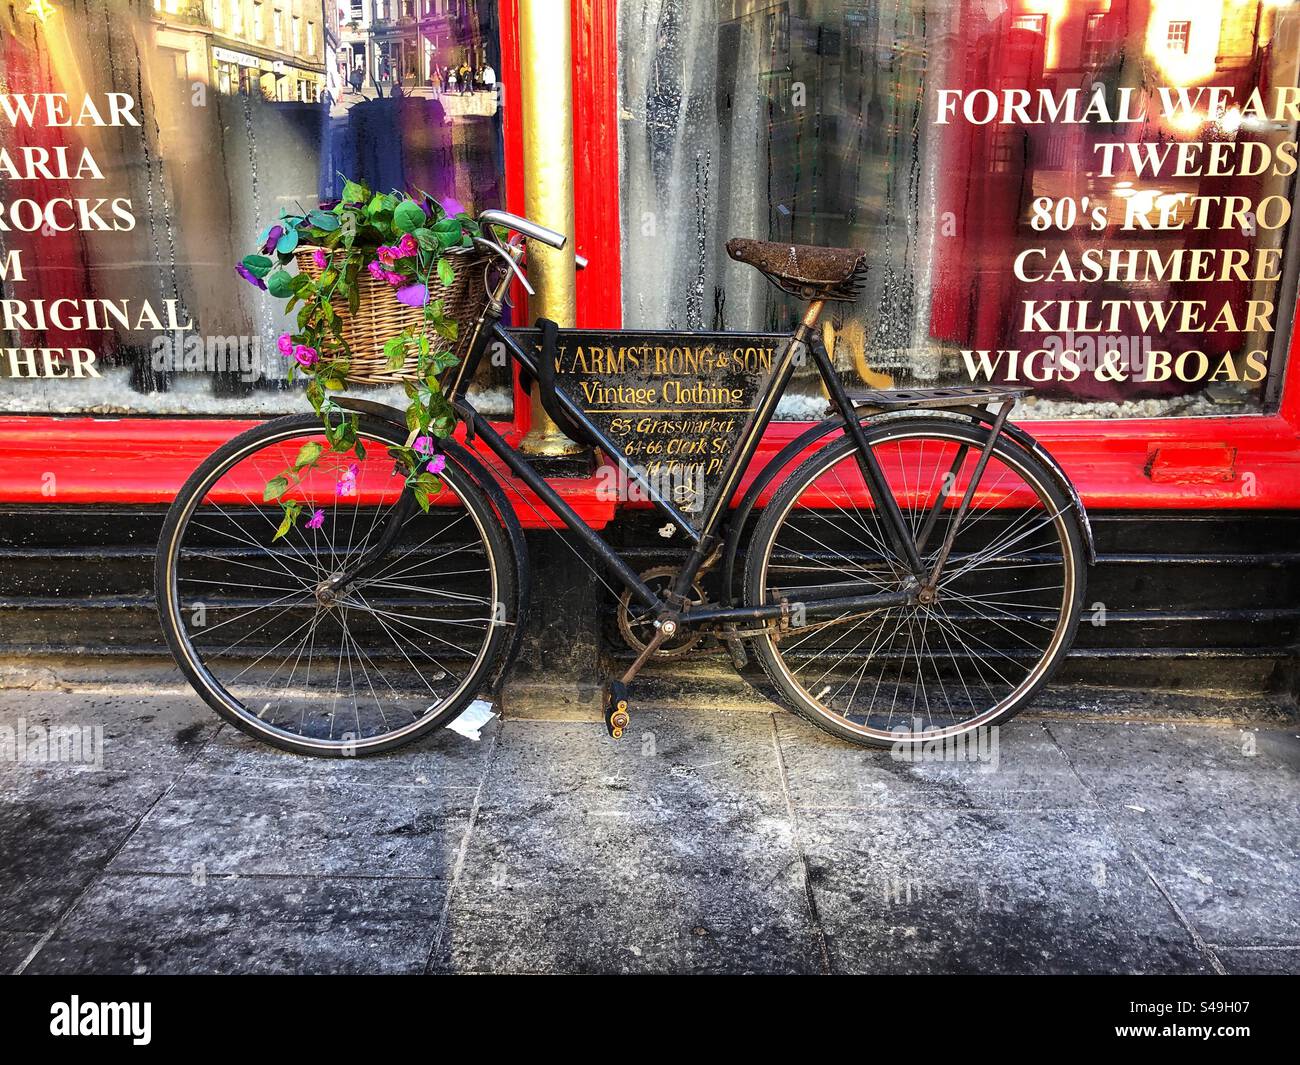 Vélo de style ancien à l'extérieur de la boutique publicité Armstrong & son vêtements vintage, Grassmarket Edinburgh Écosse Banque D'Images